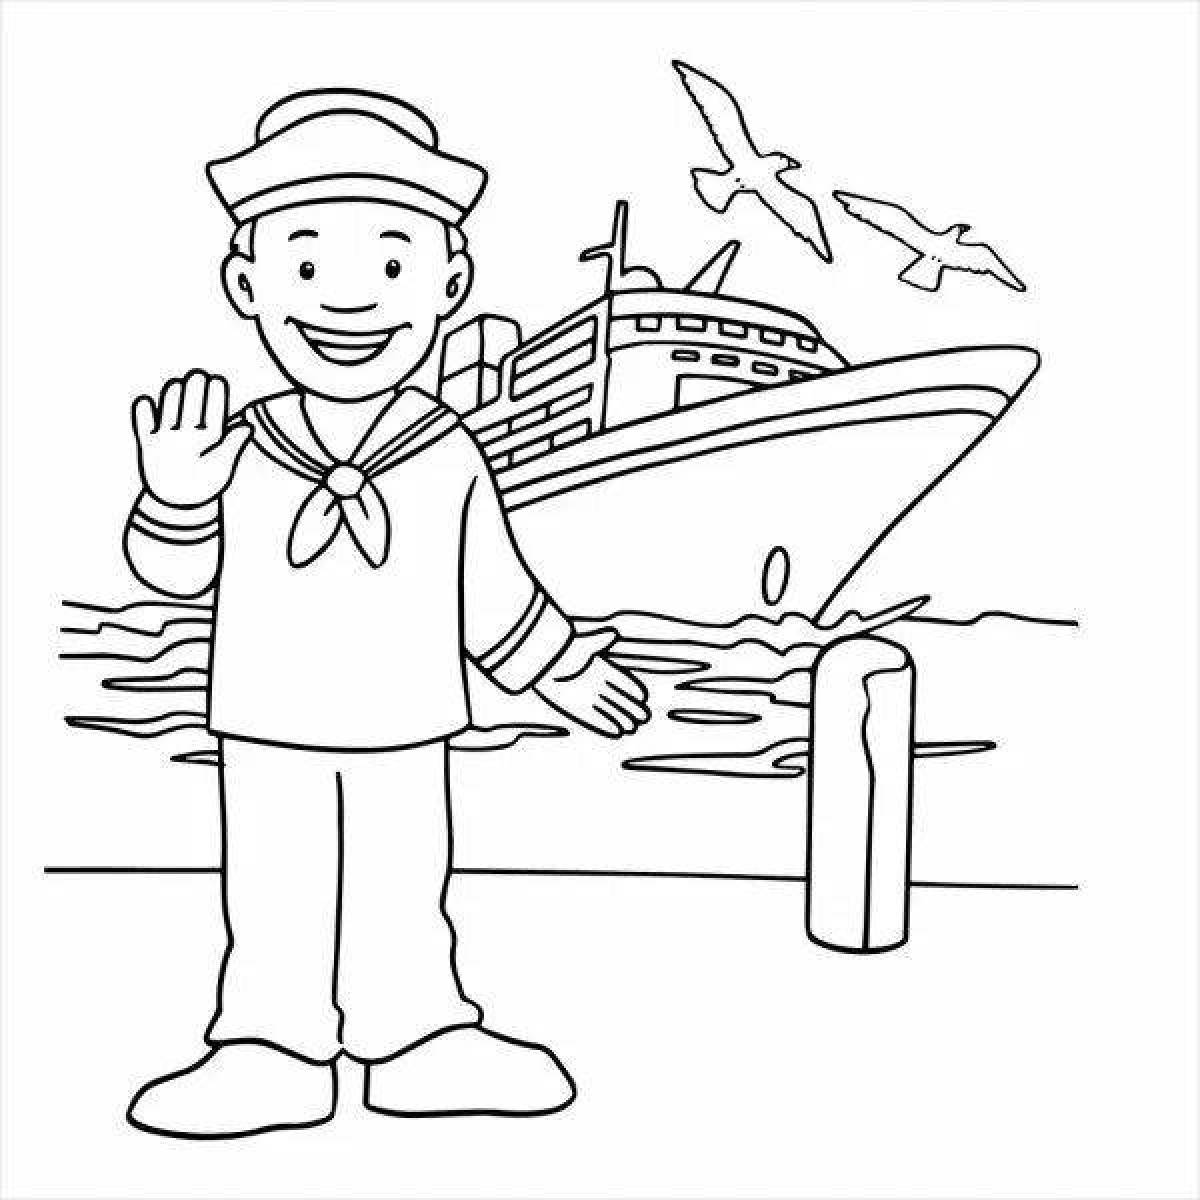 «Моряк» бесплатная раскраска для детей - мальчиков и девочек